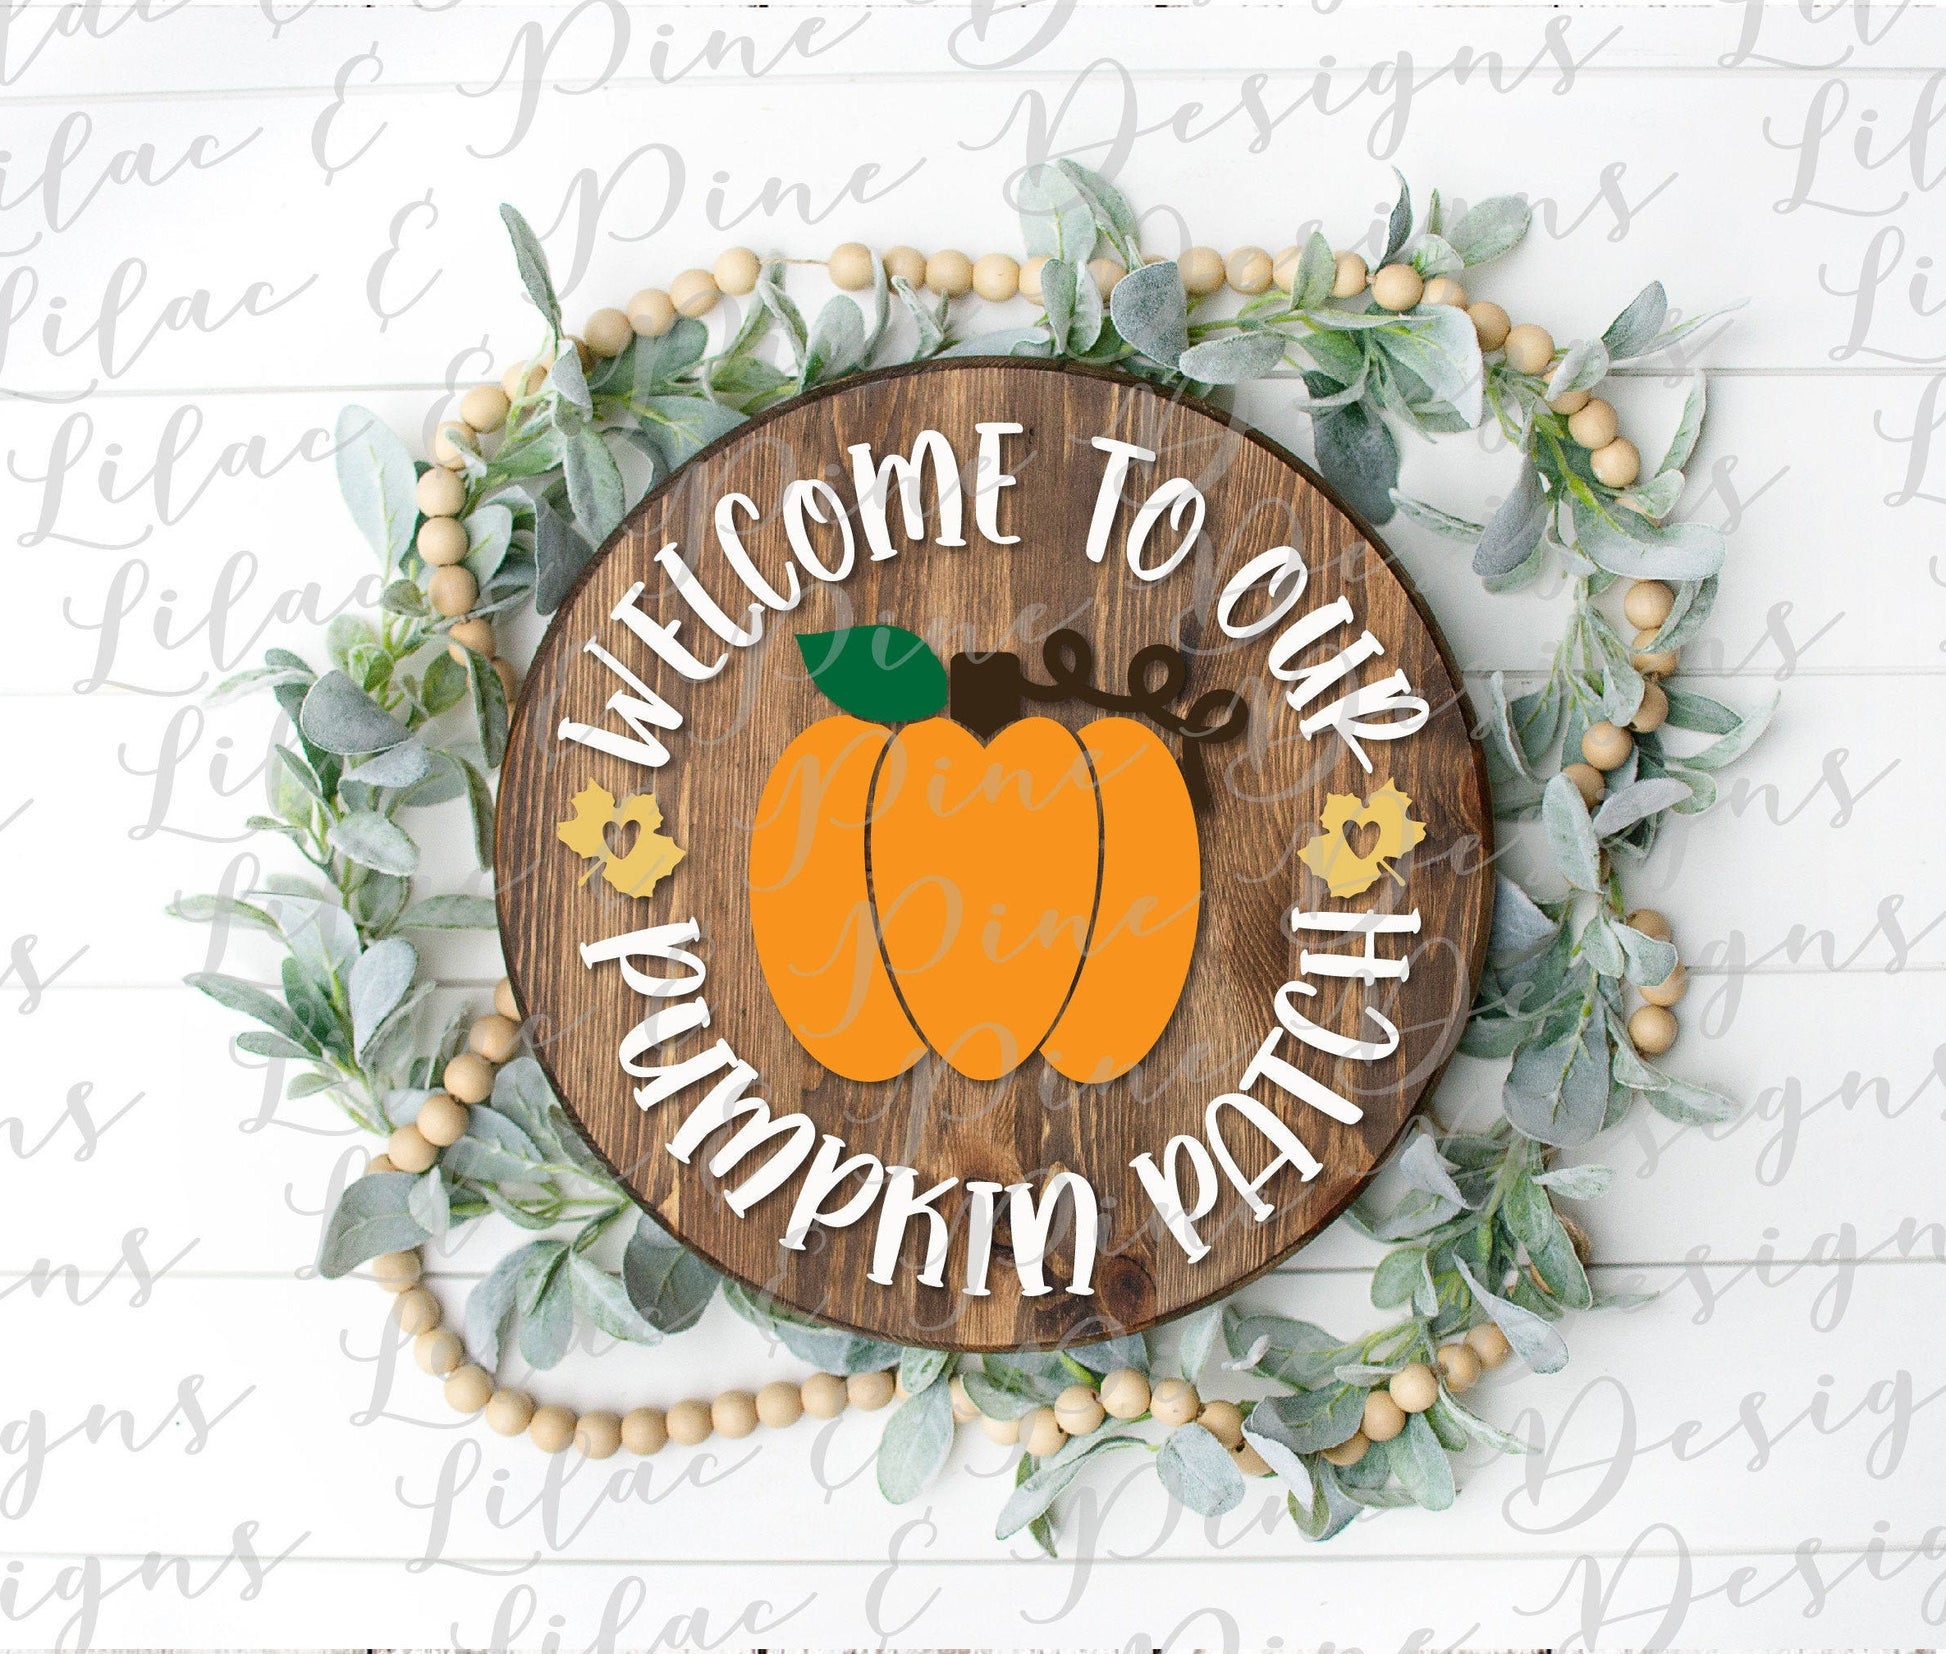 Pumpkin patch SVG, Welcome Pumpkin SVG, Fall Pumpkin SVG, Fall Decor Svg, Modern Farmhouse decor, Pumpkin round Svg, fall sign, pumpkin sign